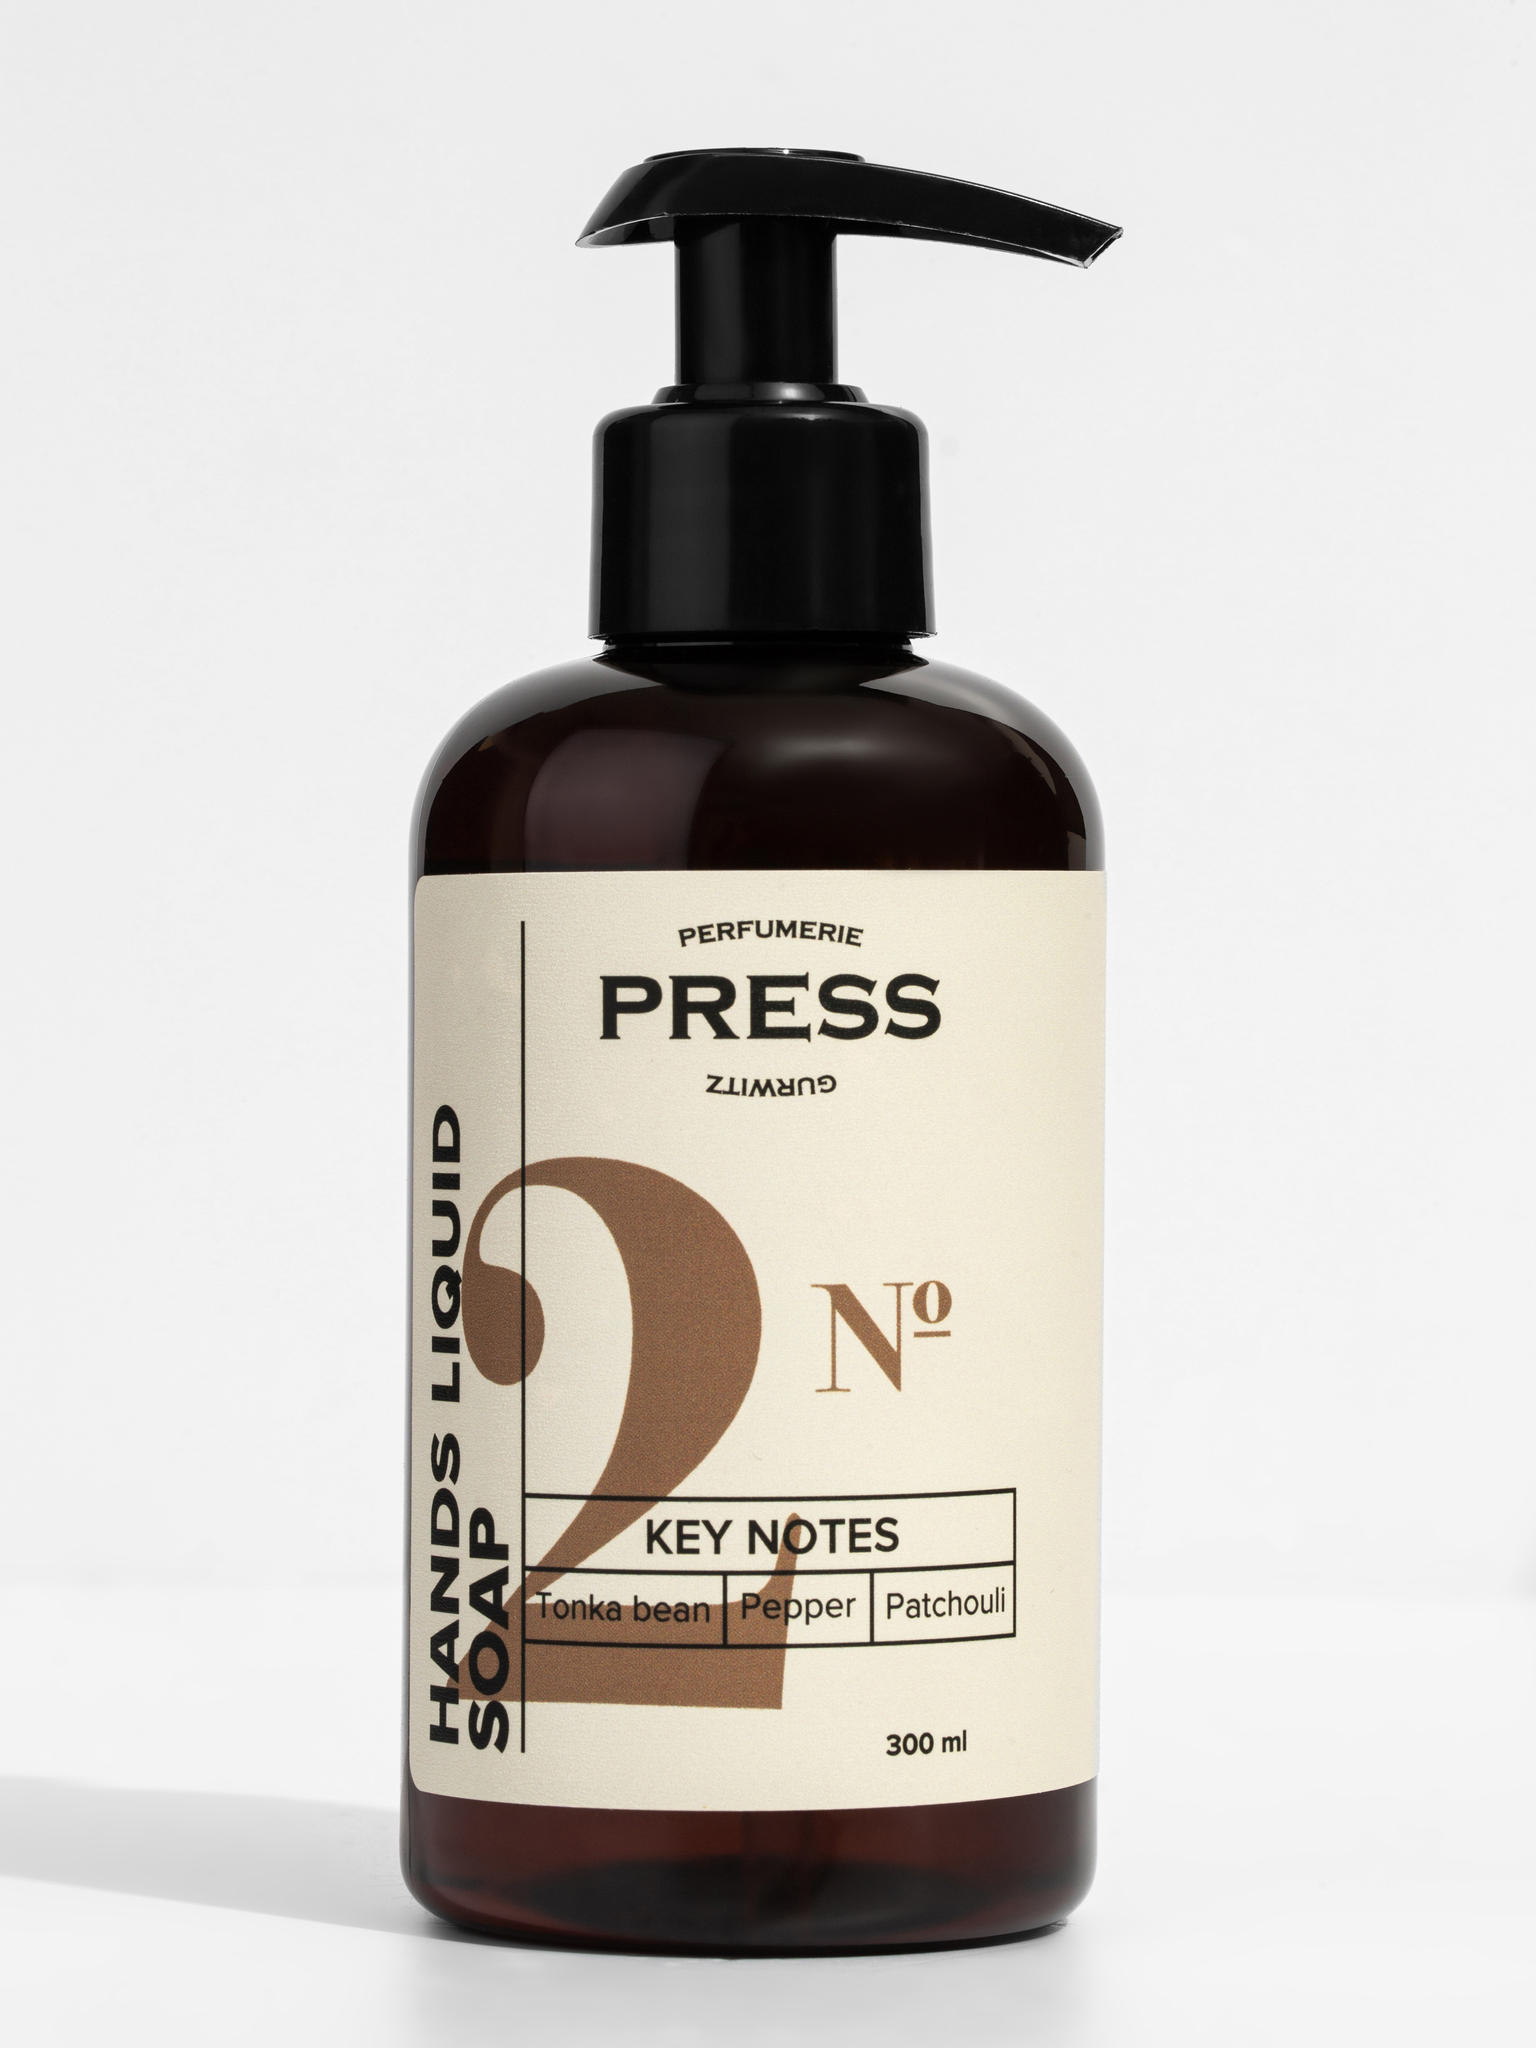 PRESS GURWITZ PERFUMERIE Жидкое мыло для рук №2 Press Gurwitz Perfumerie IMG_3252.jpg